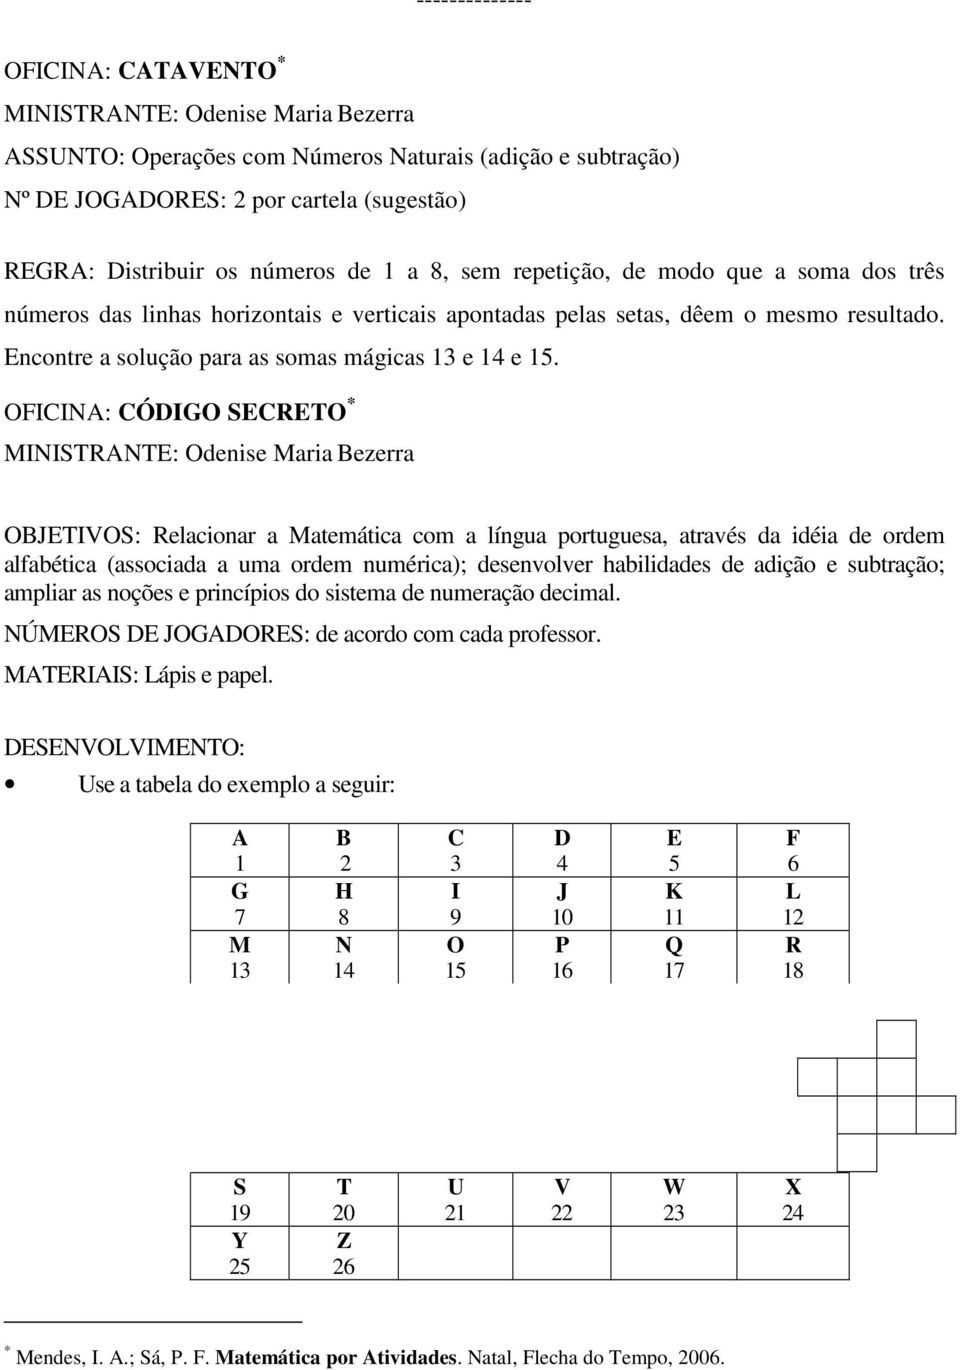 OFICINA: CÓDIGO SECRETO * OBJETIVOS: Relacionar a Matemática com a língua portuguesa, através da idéia de ordem alfabética (associada a uma ordem numérica); desenvolver habilidades de adição e